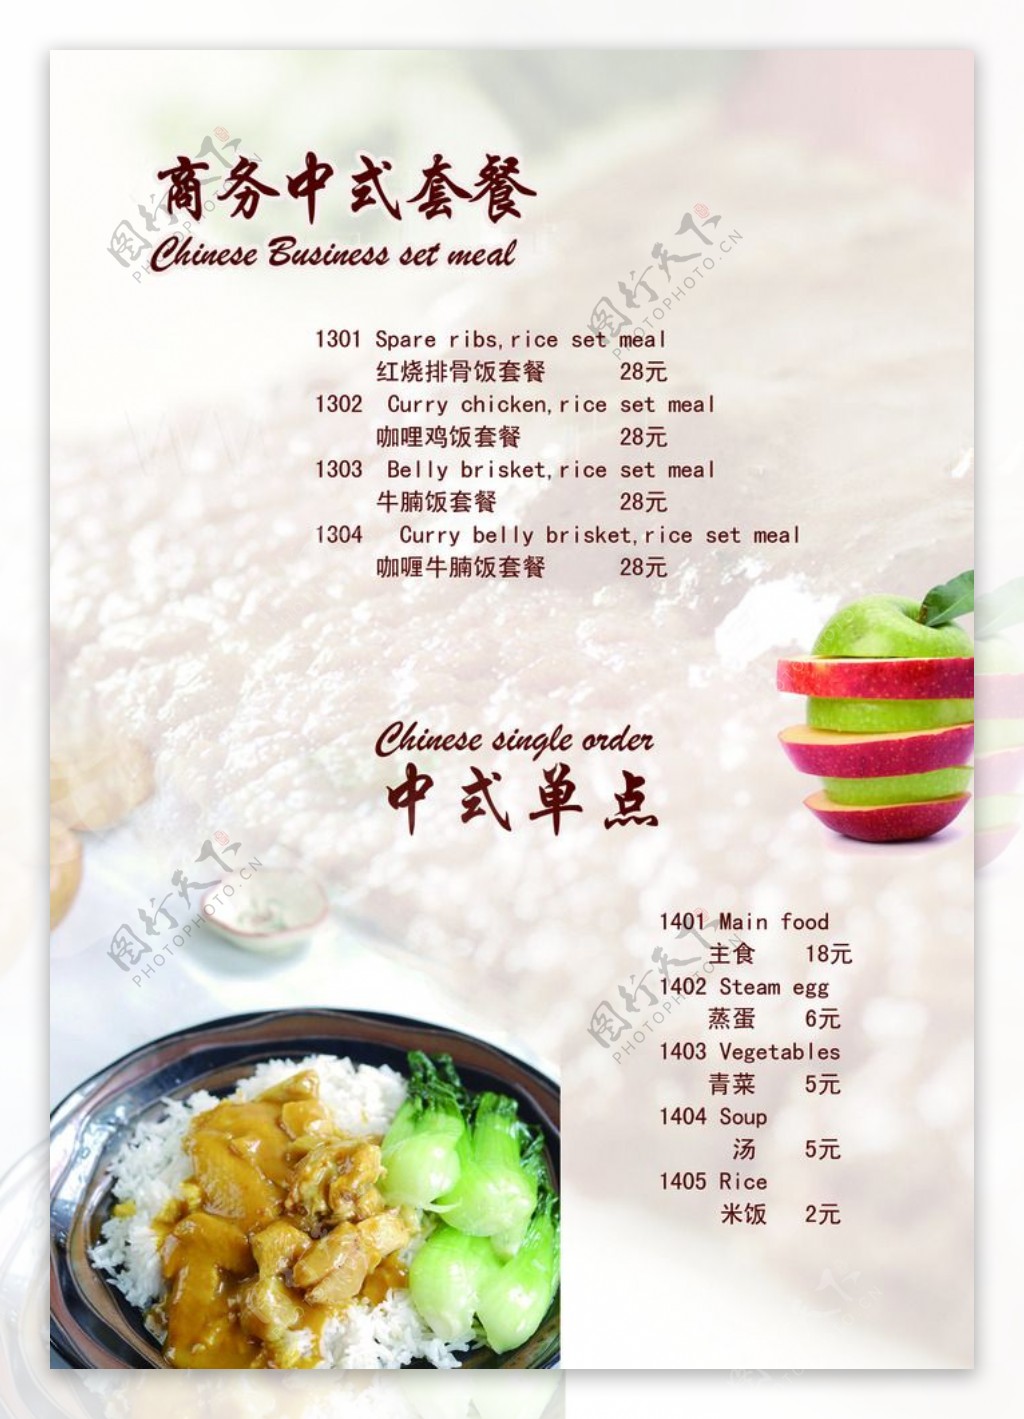 中式商务套餐价目表图片